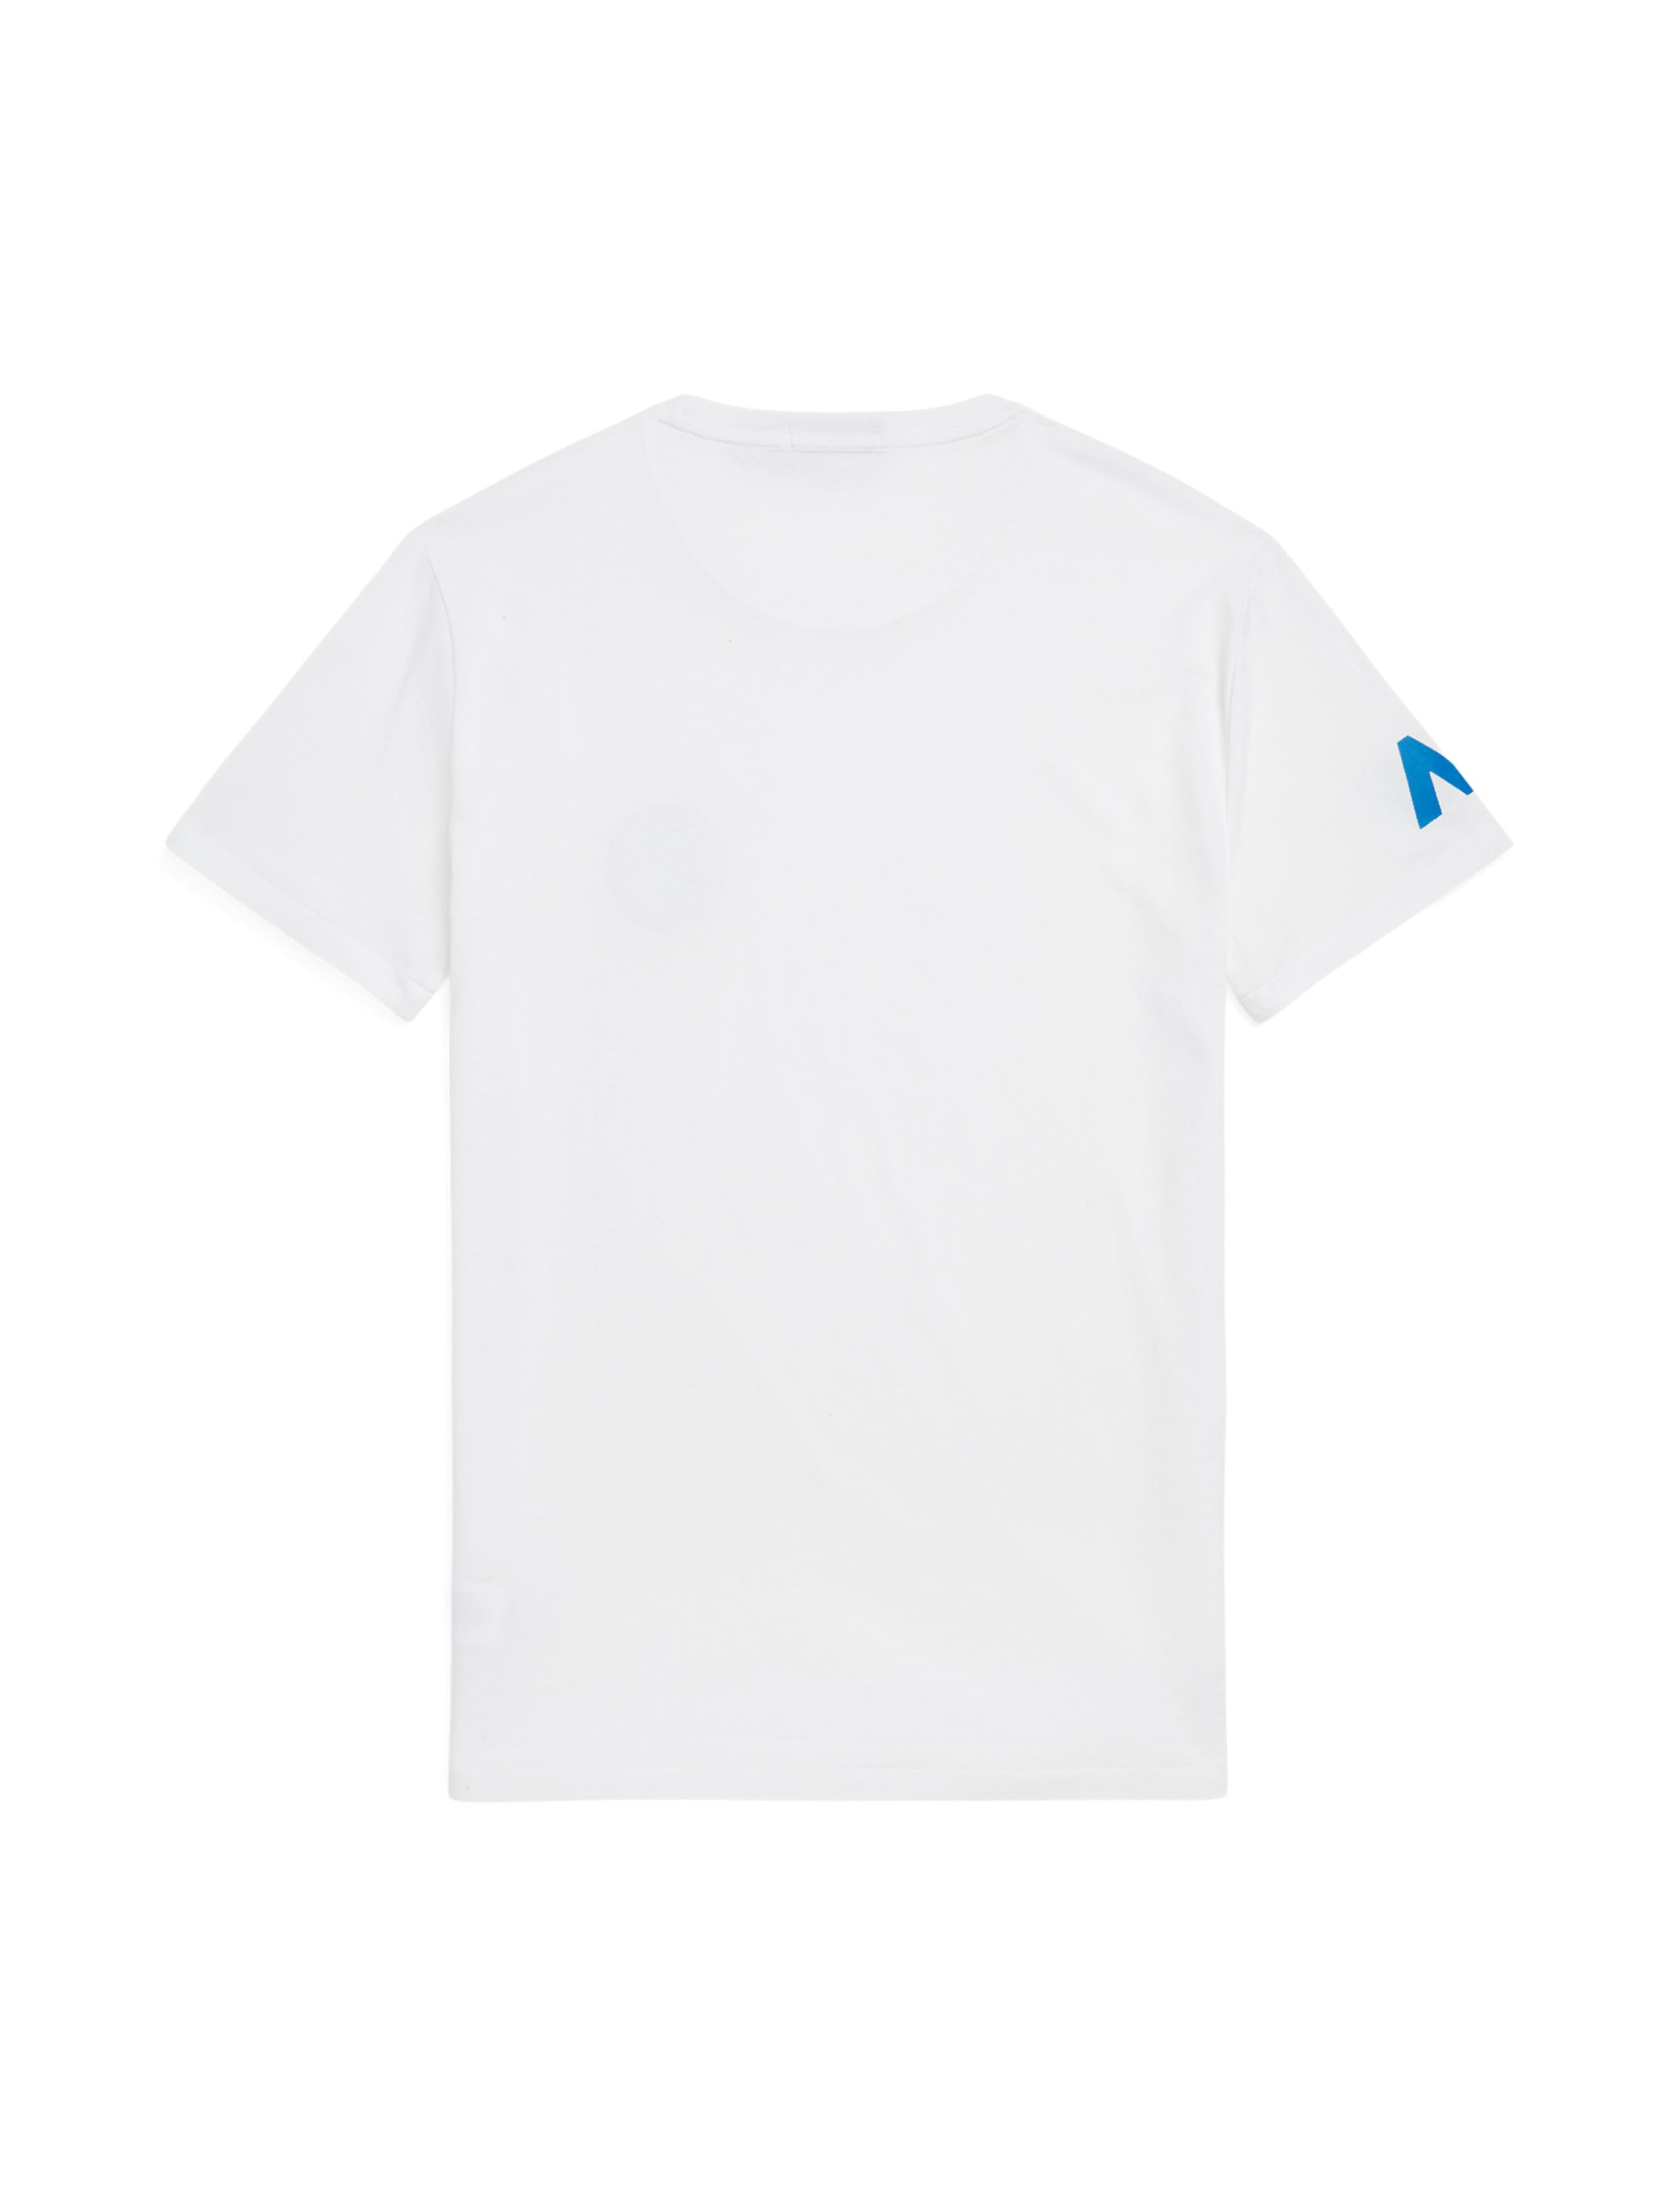 T-Shirt - Men's Pocket - White